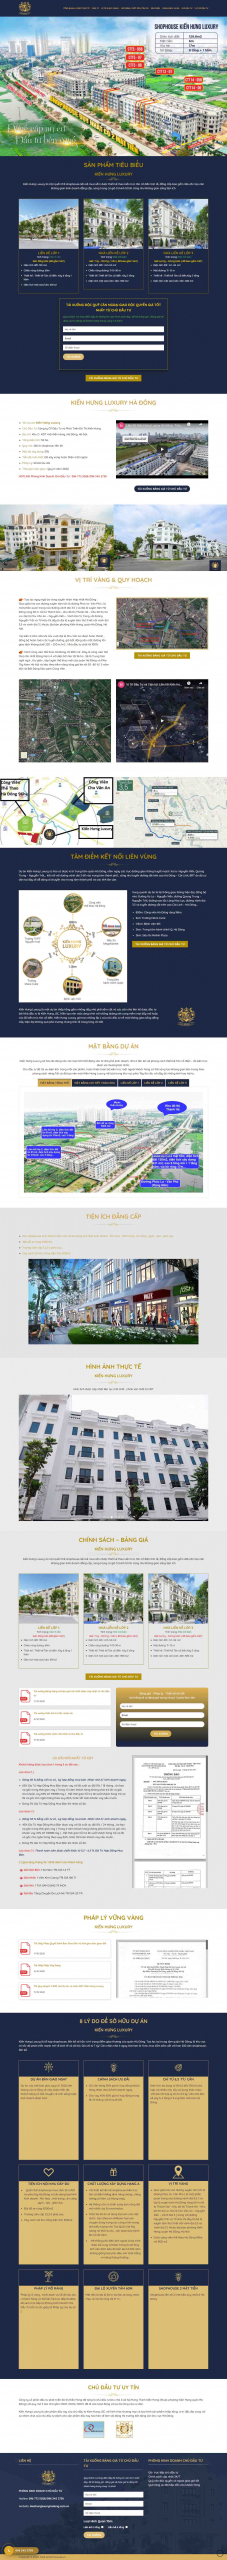 Mẫu giao diện thiết kế website bất động sản chuyên nghiệp bds205